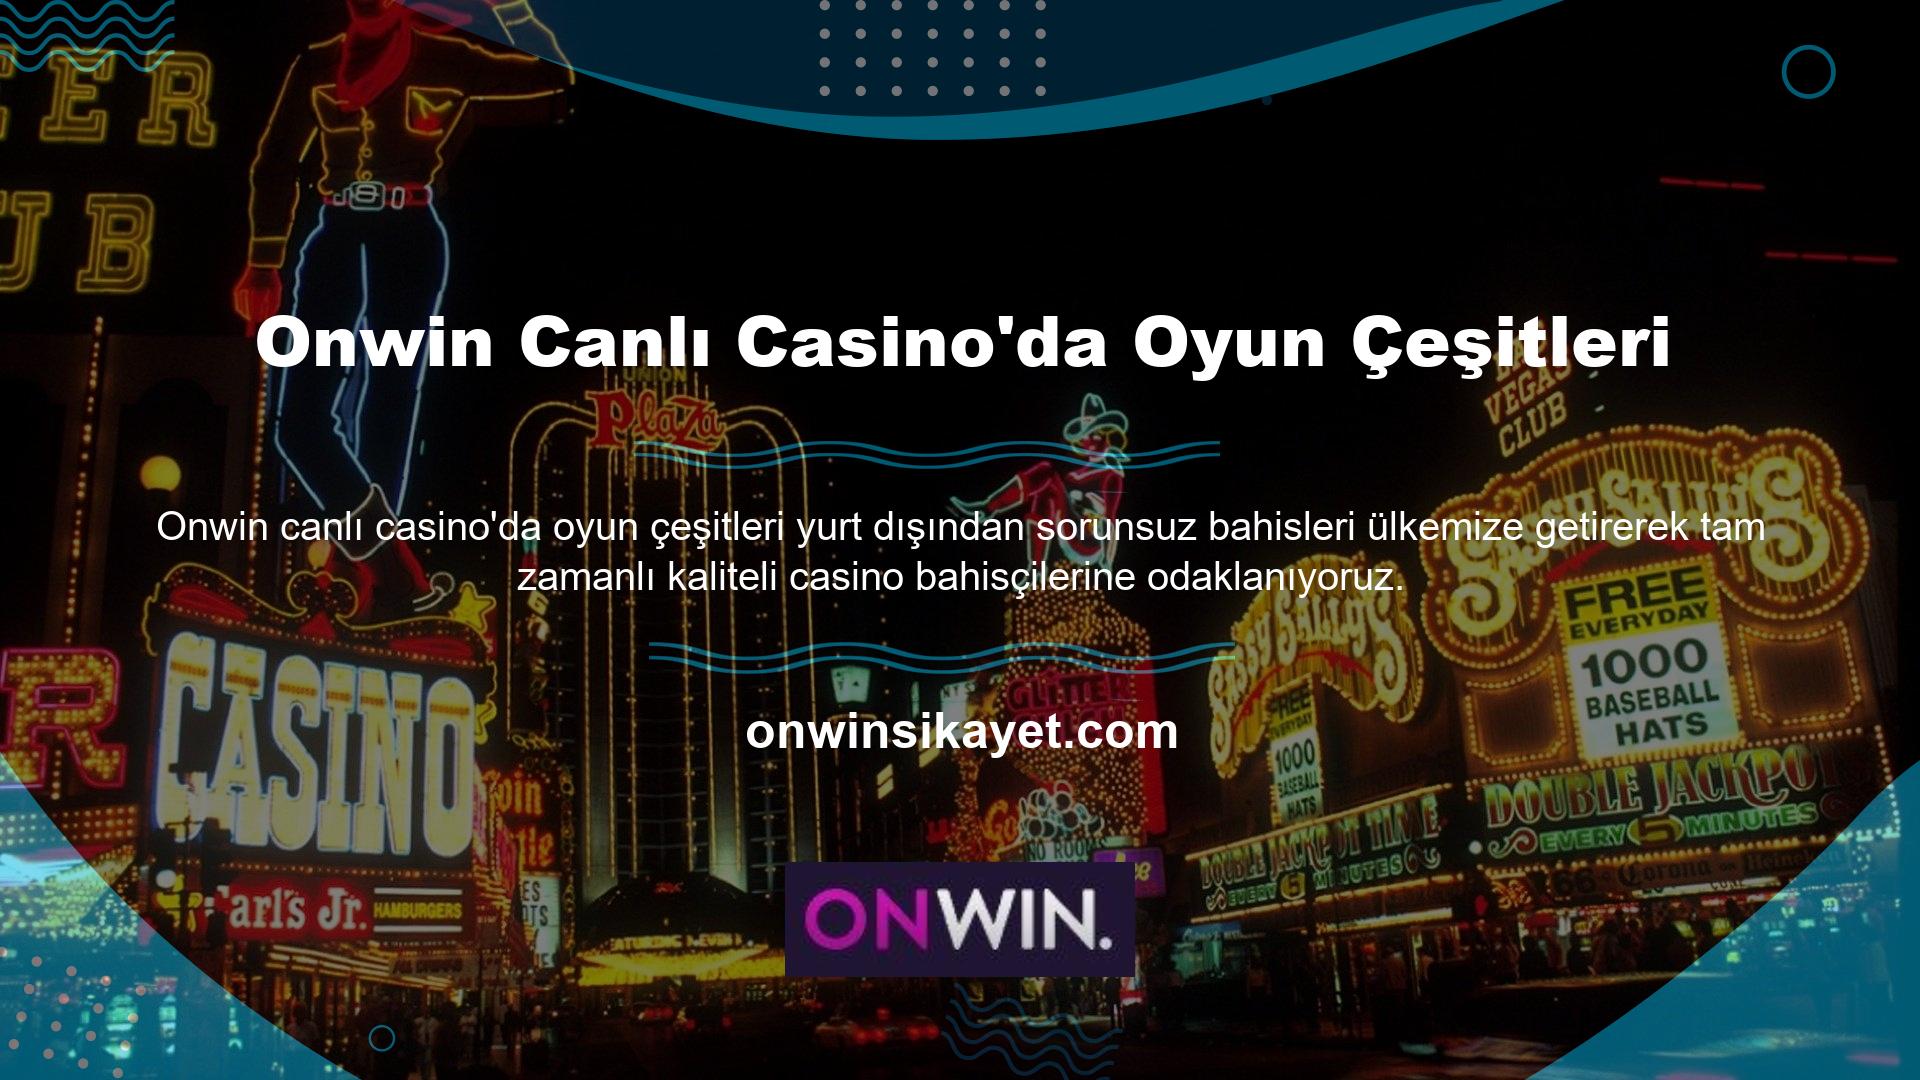 Bildiğiniz üzere ülkemizde birçok kişi sitede sadece canlı casino oyunları ile ilgilenmektedir